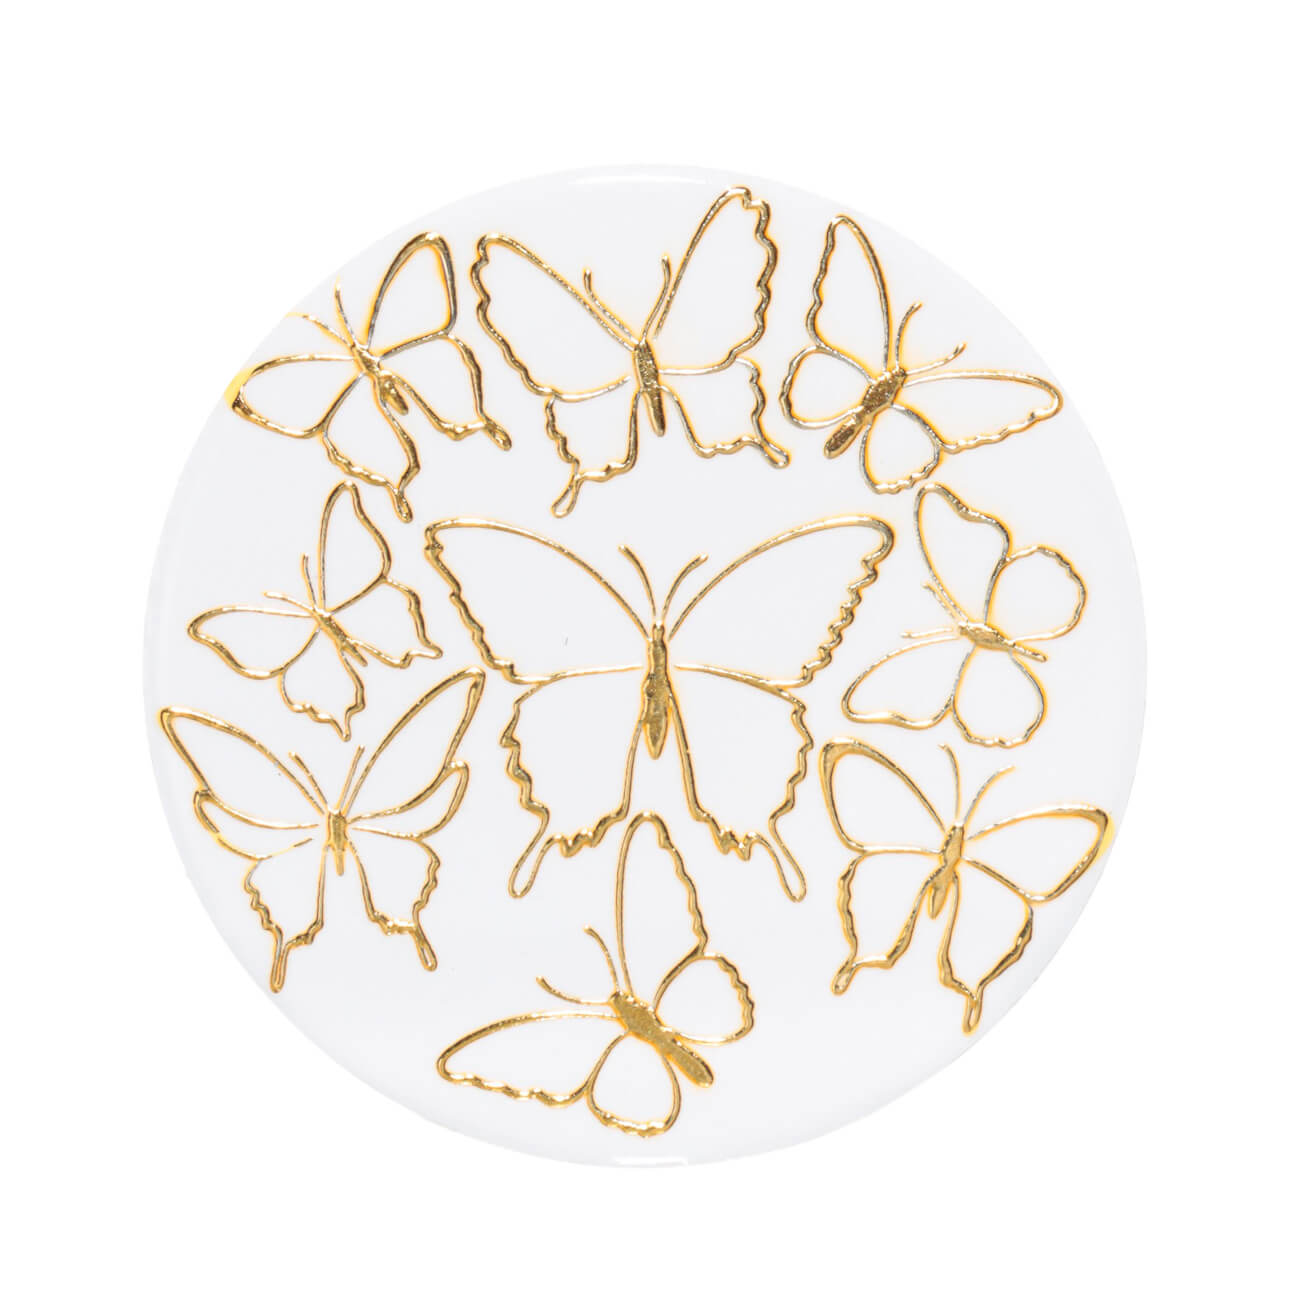 Подставка под кружку, 11 см, керамика/пробка, круглая, белая, Золотистые бабочки, Butterfly подставка glasar бабочки серебристая 33х33х75 см